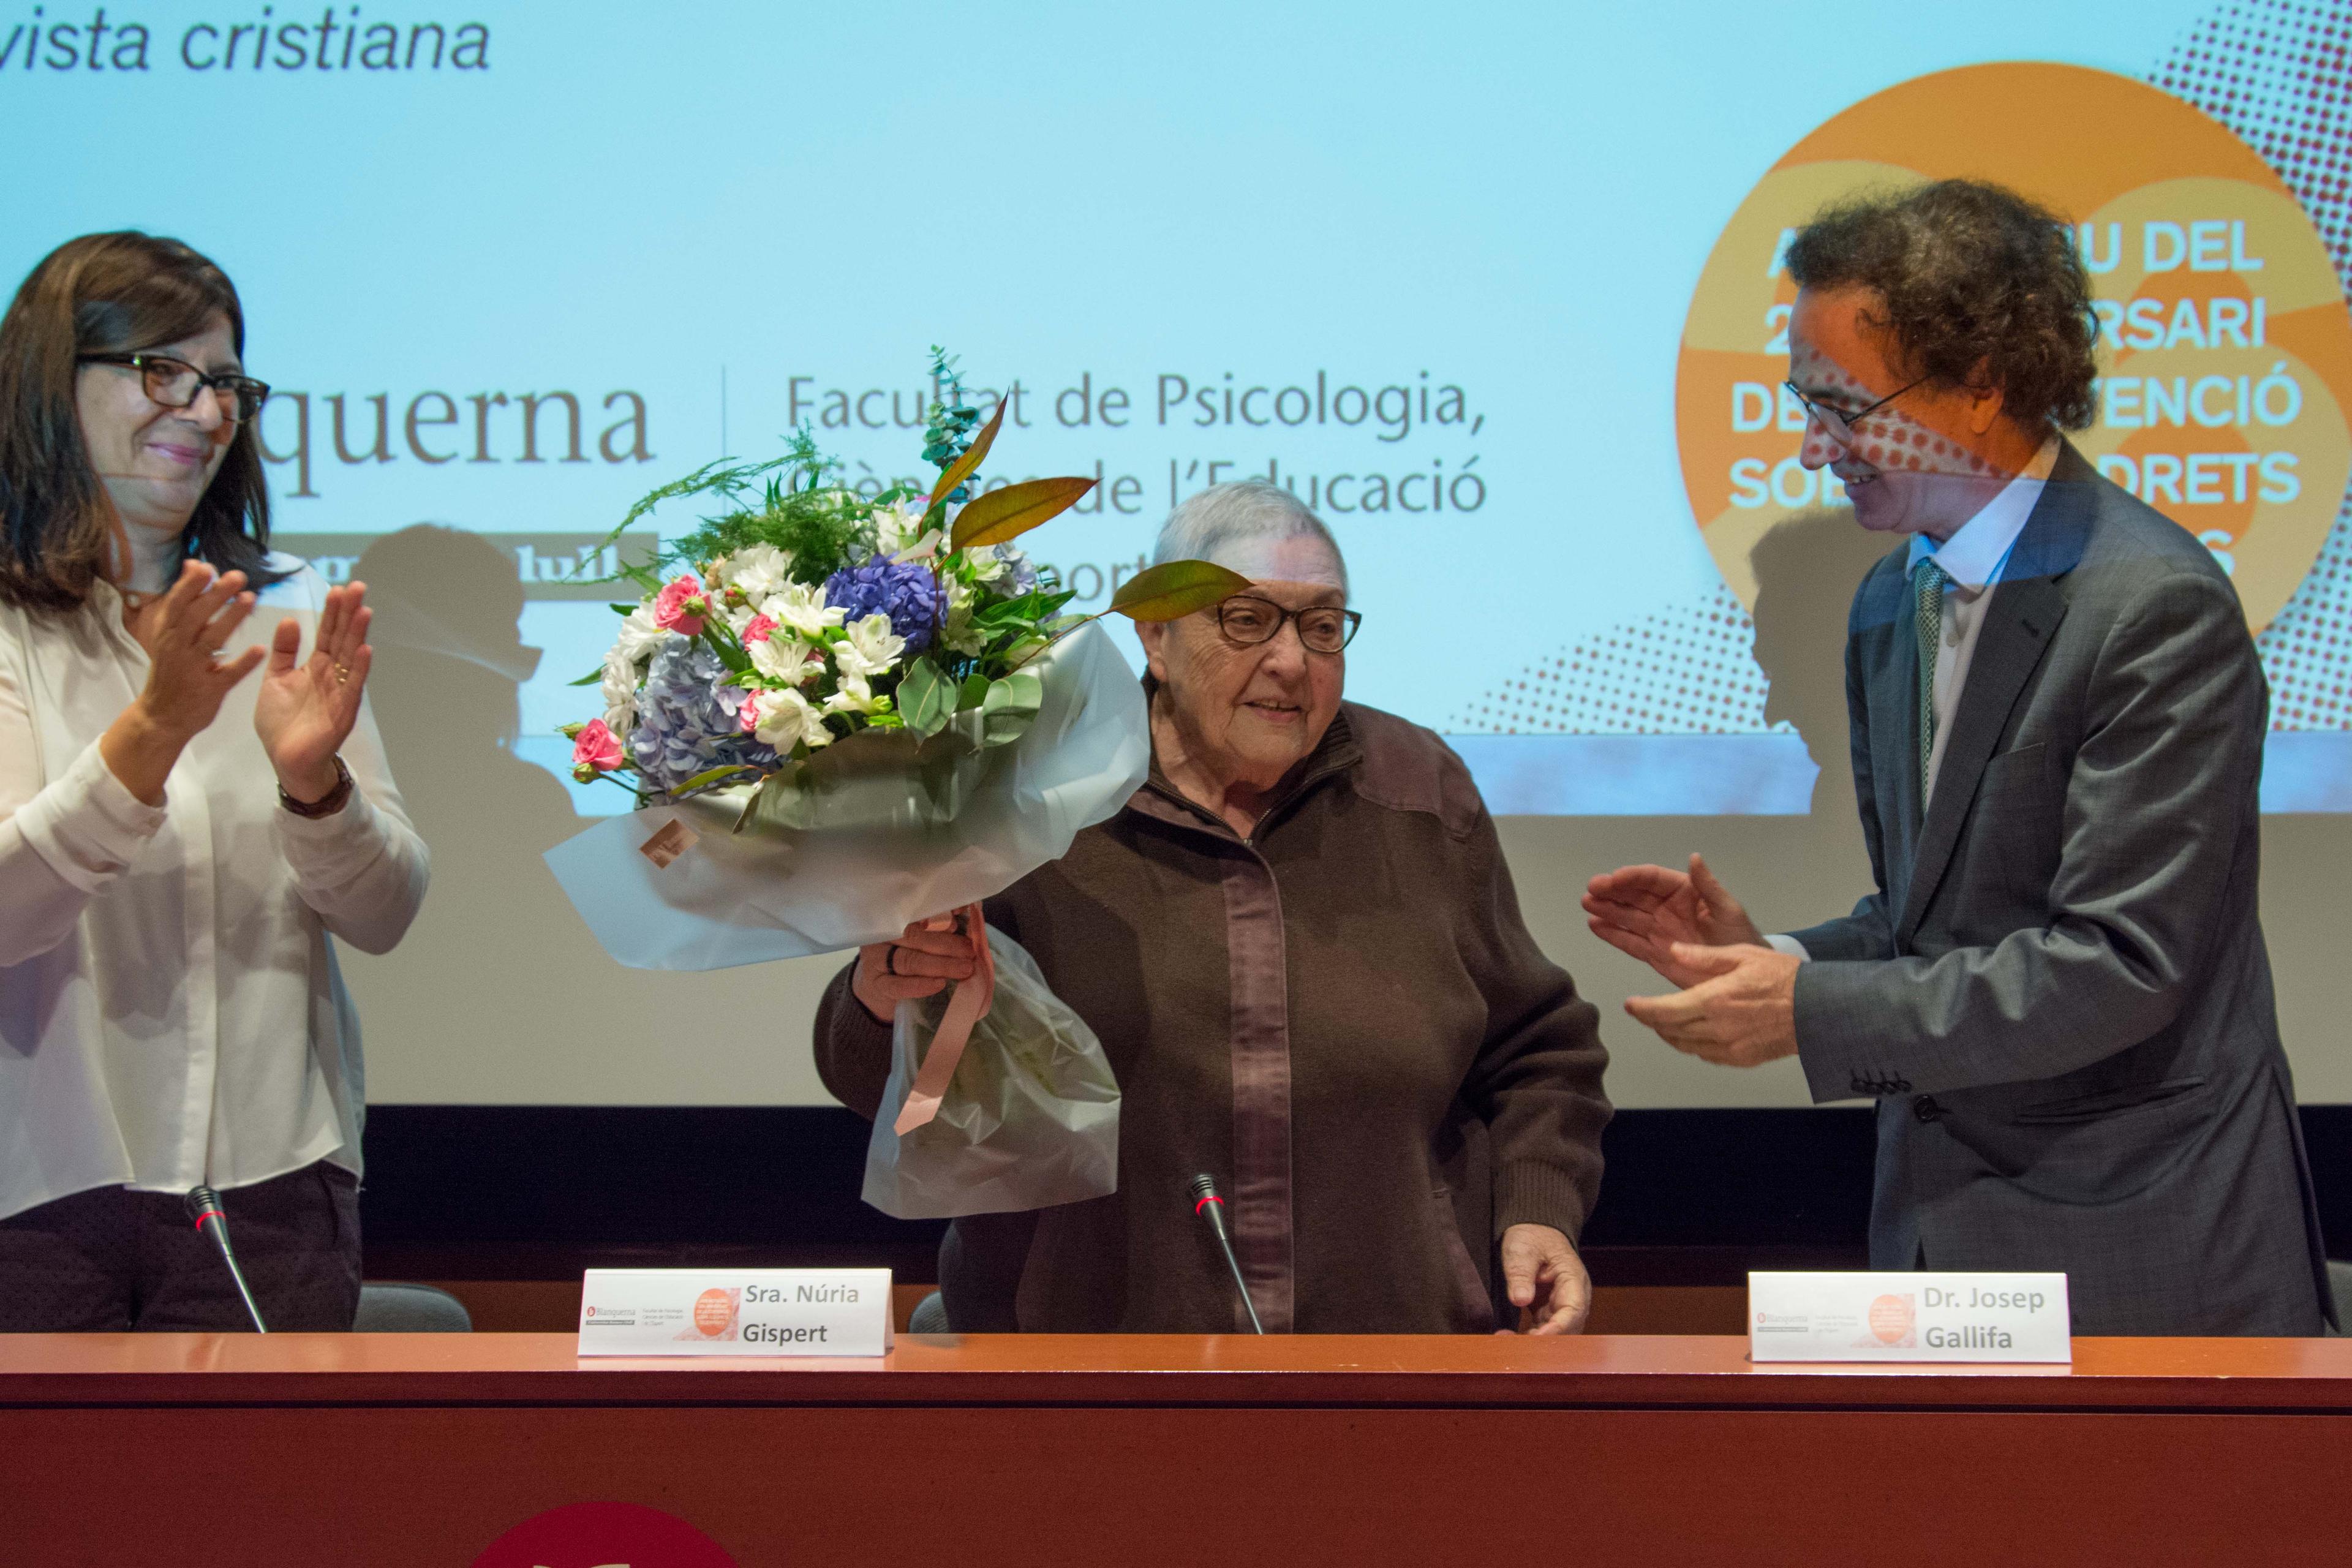 Commemoració Drets dels Infants. La Sra. Núria Gispert i Feliu rep un ram de flors del Dr. Josep Gallifa, Degà de la Facultat